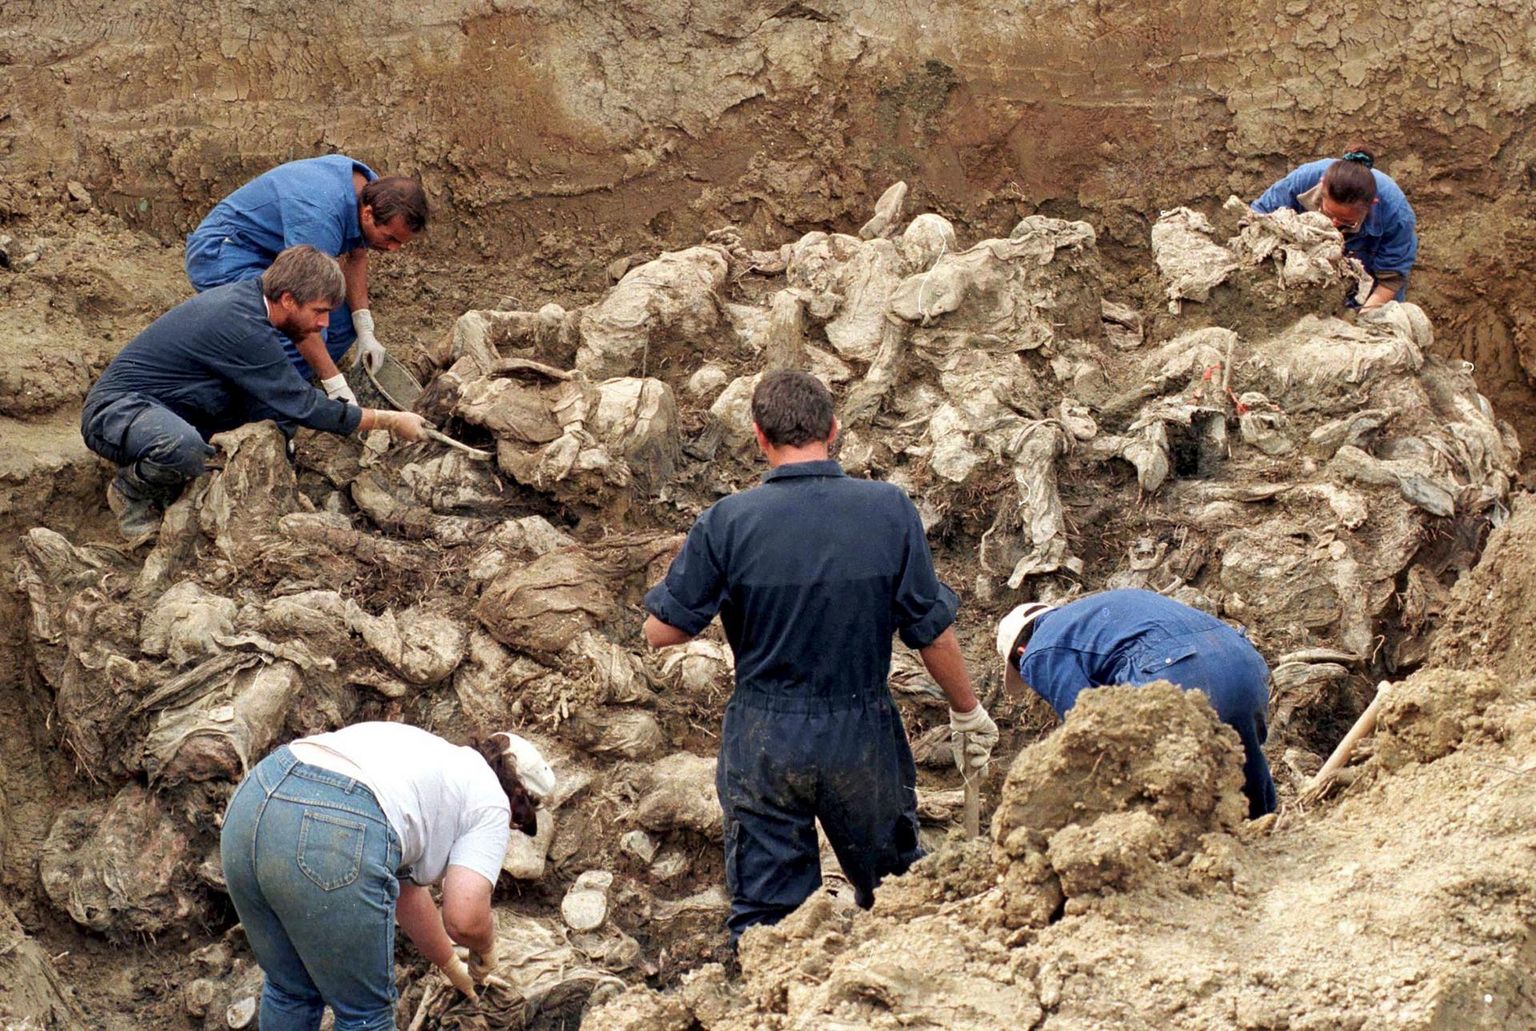 Rahvusvaheline kohtuekspertide meeskond uurib Srebrenica massimõrva ohvrite säilmeid Pilices 1996. aasta varasügisel. Umbes 130 Bosnia moslemi meest toimetati Srebrenicast bussidega enam kui 60 kilomeetri kaugusel asuva küla põllule, lasti maha ja maeti massihauda. Kaks aastat pärast veretööd, 1997. aasta suvel jõuti nii kaugele, et tuvastati esimesed Pilicesest leitud säilmed – tegu oli üldse esimeste Srebrenica genotsiidi ohvritega, kes identifitseeriti. 